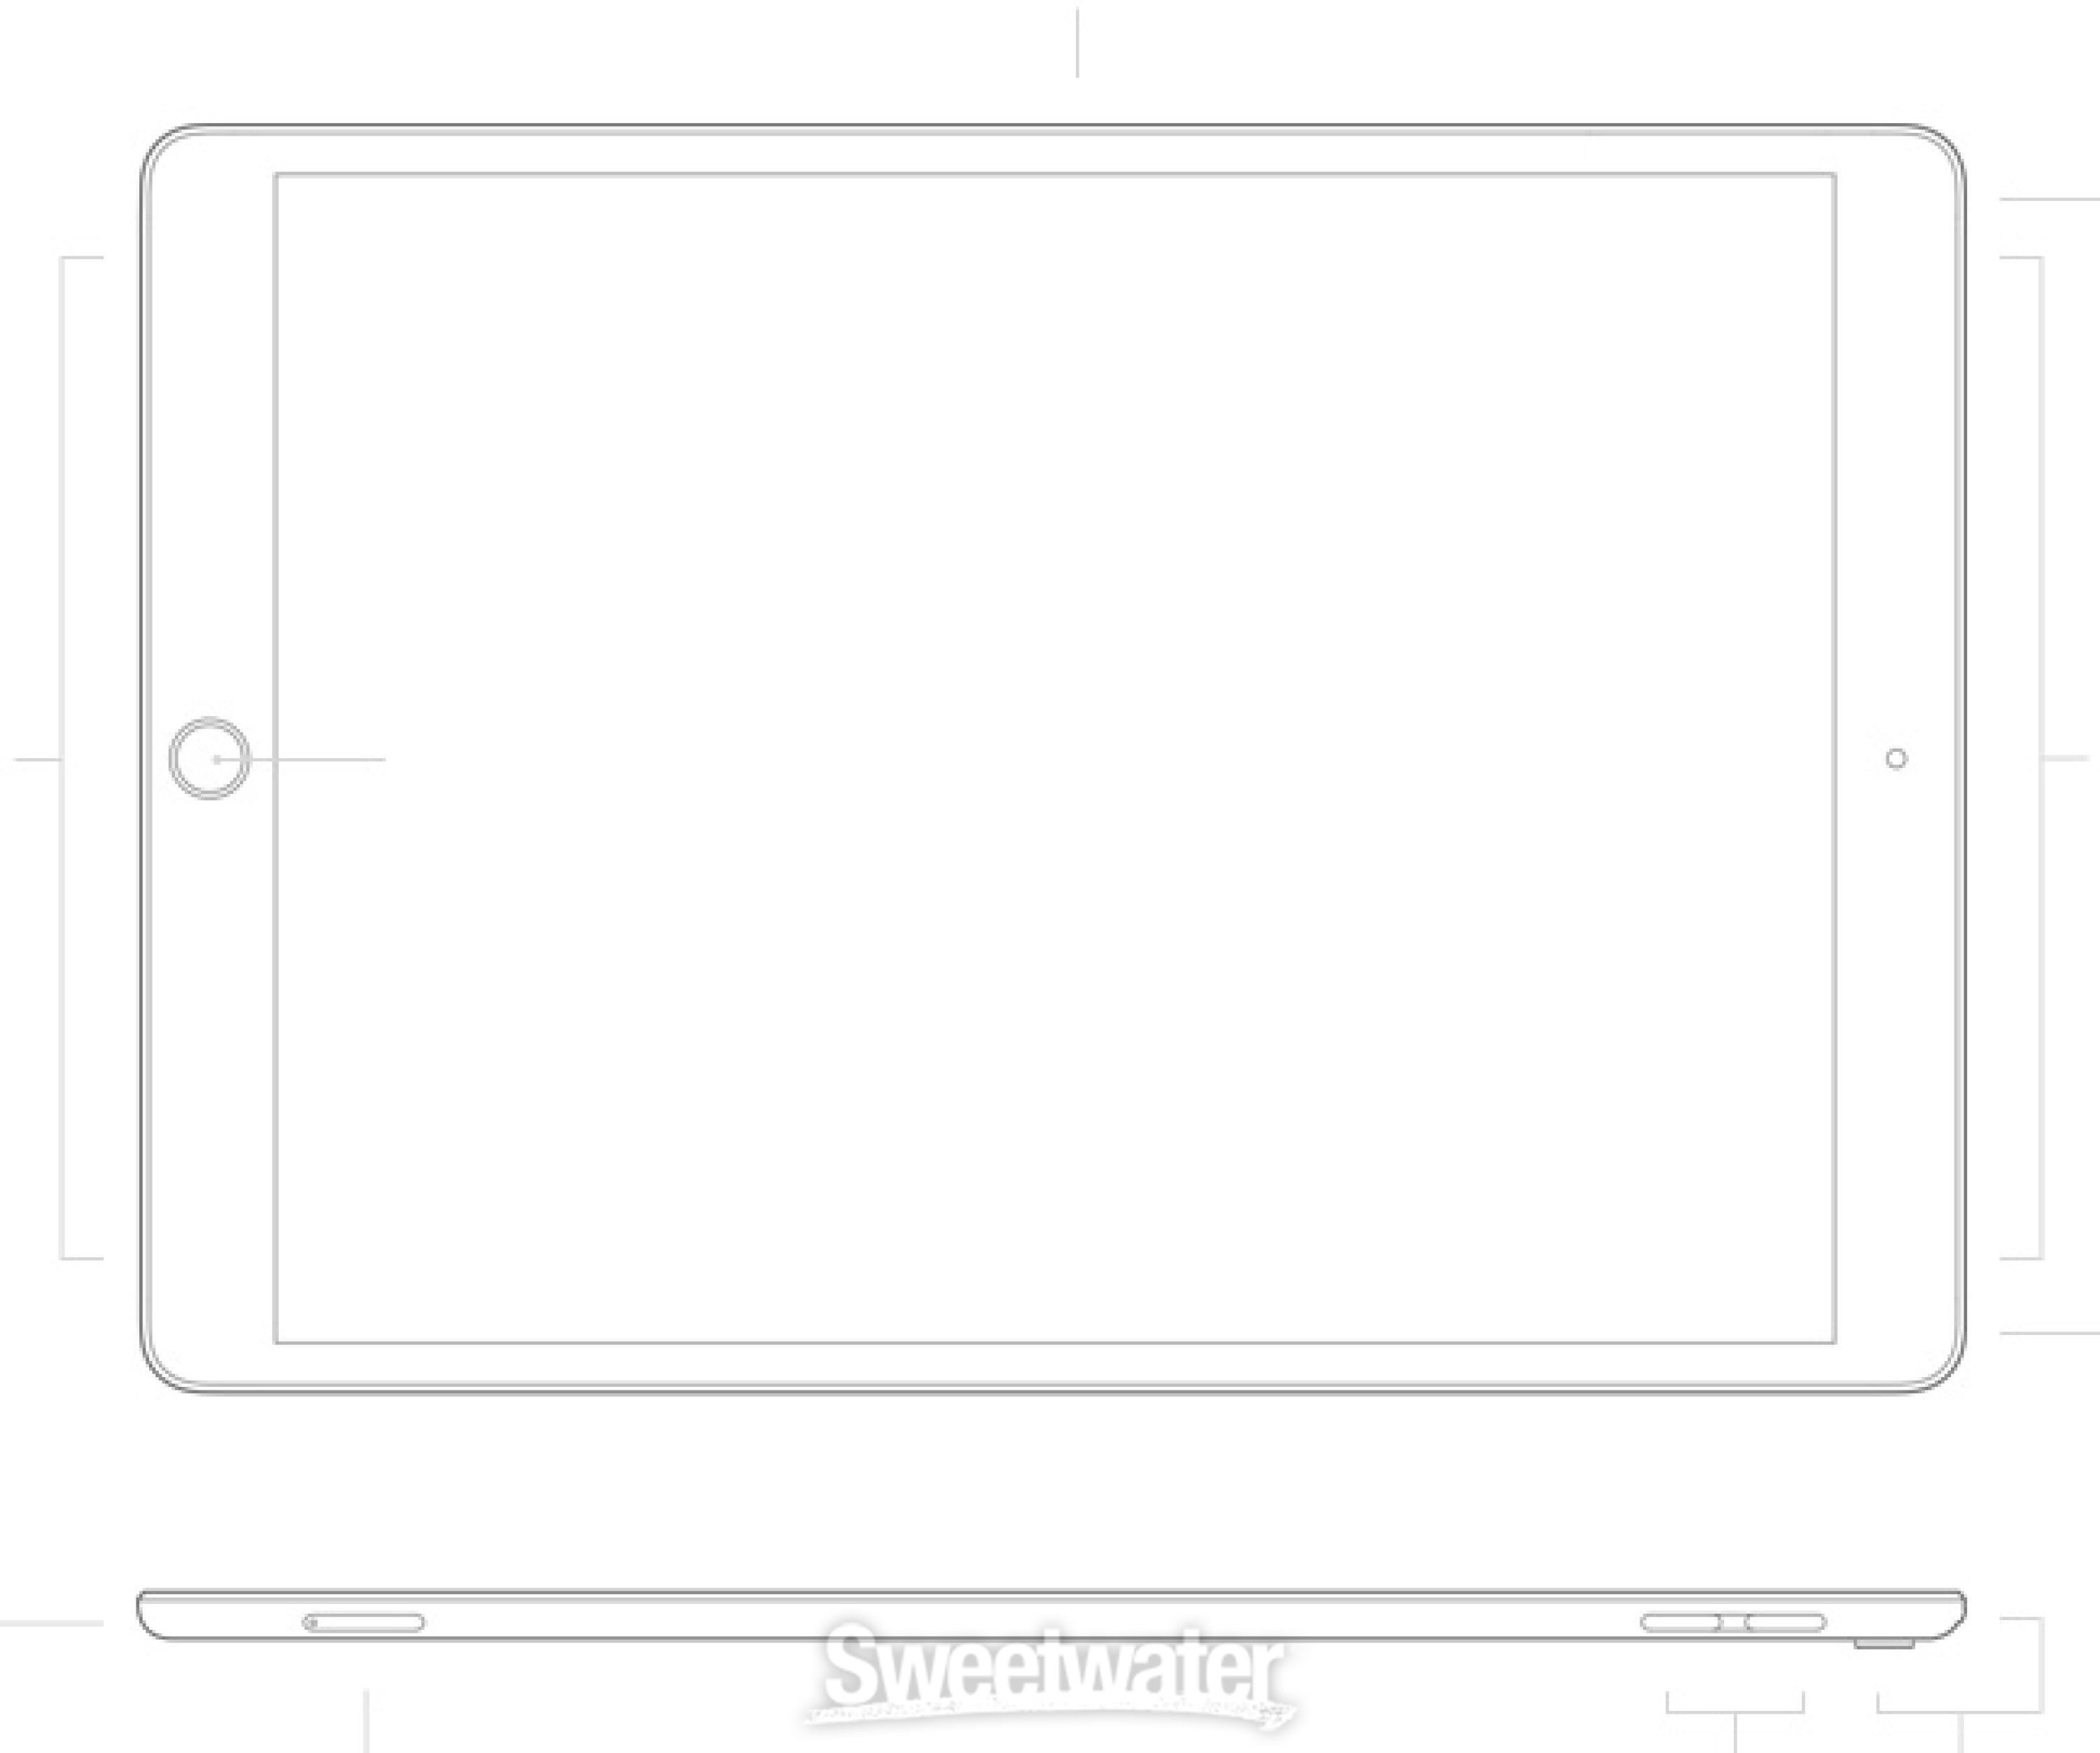 Apple 10.5 iPad Pro Wi-Fi 64GB - Space Gray | Sweetwater